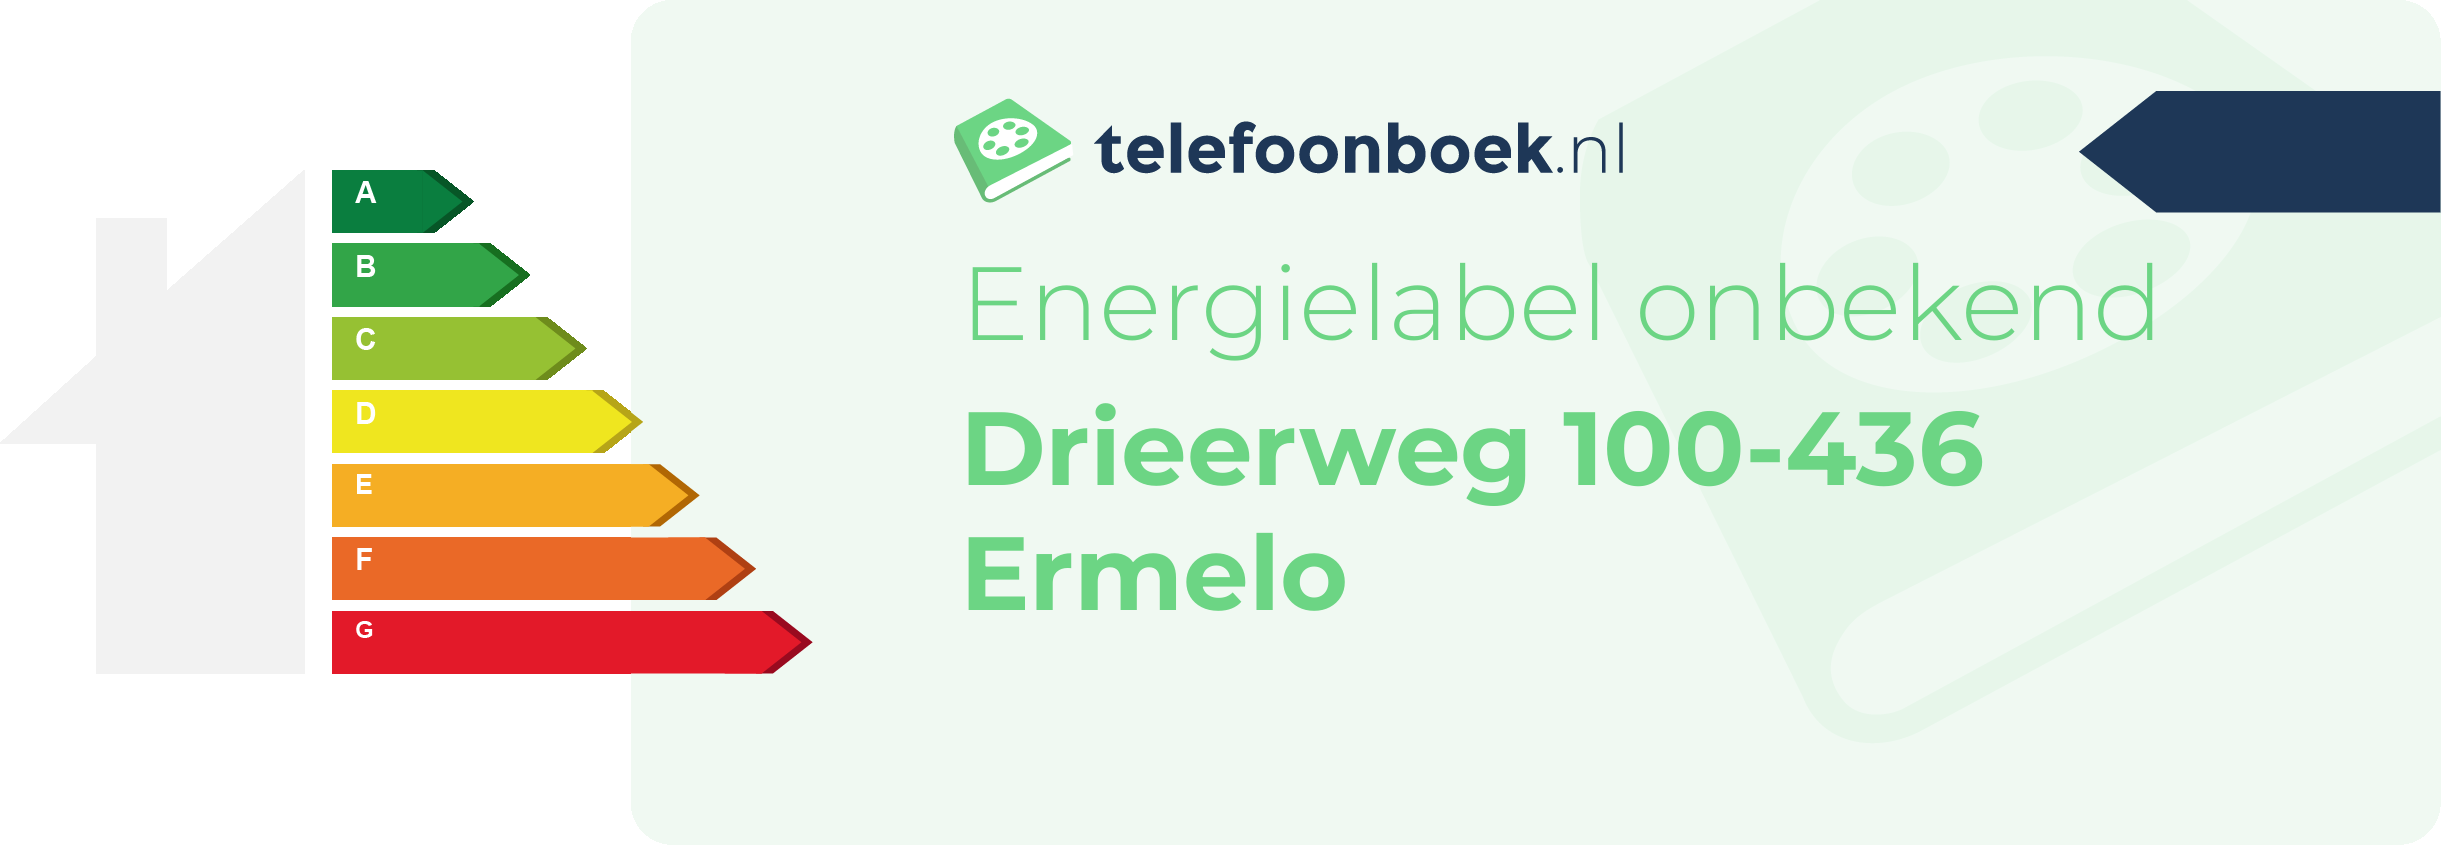 Energielabel Drieerweg 100-436 Ermelo